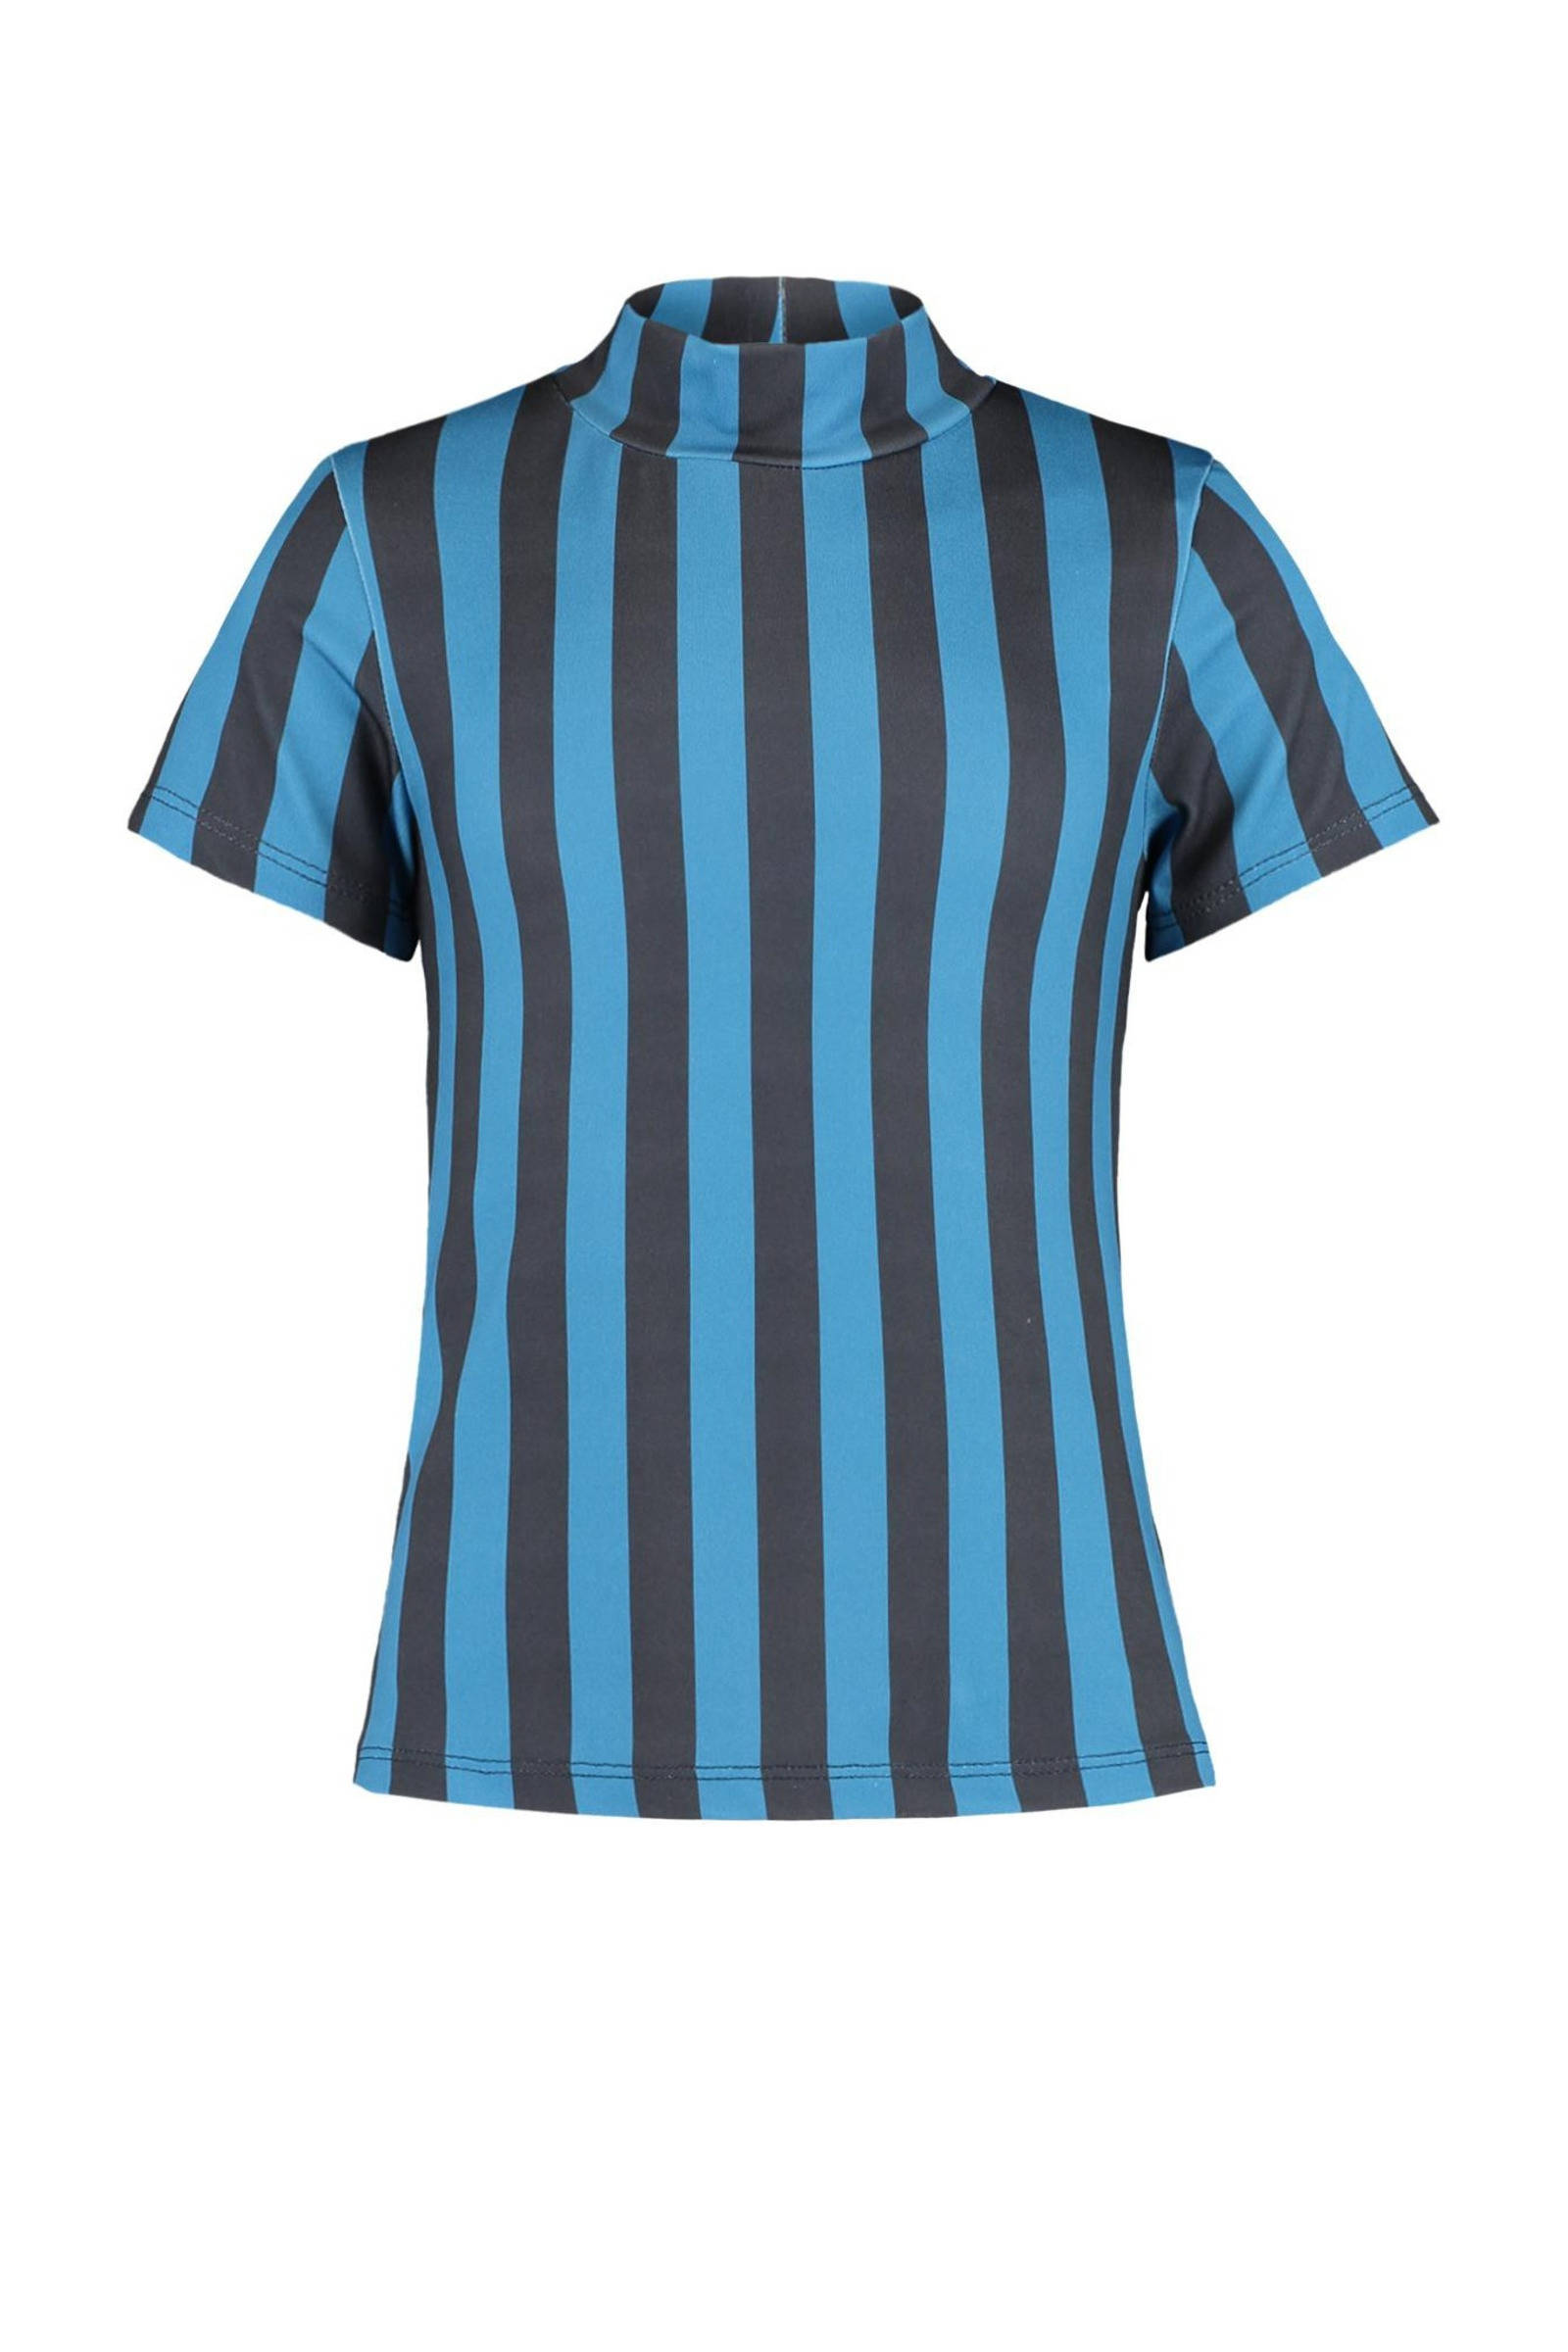 CoolCat Junior gestreept T shirt Elora blauw online kopen